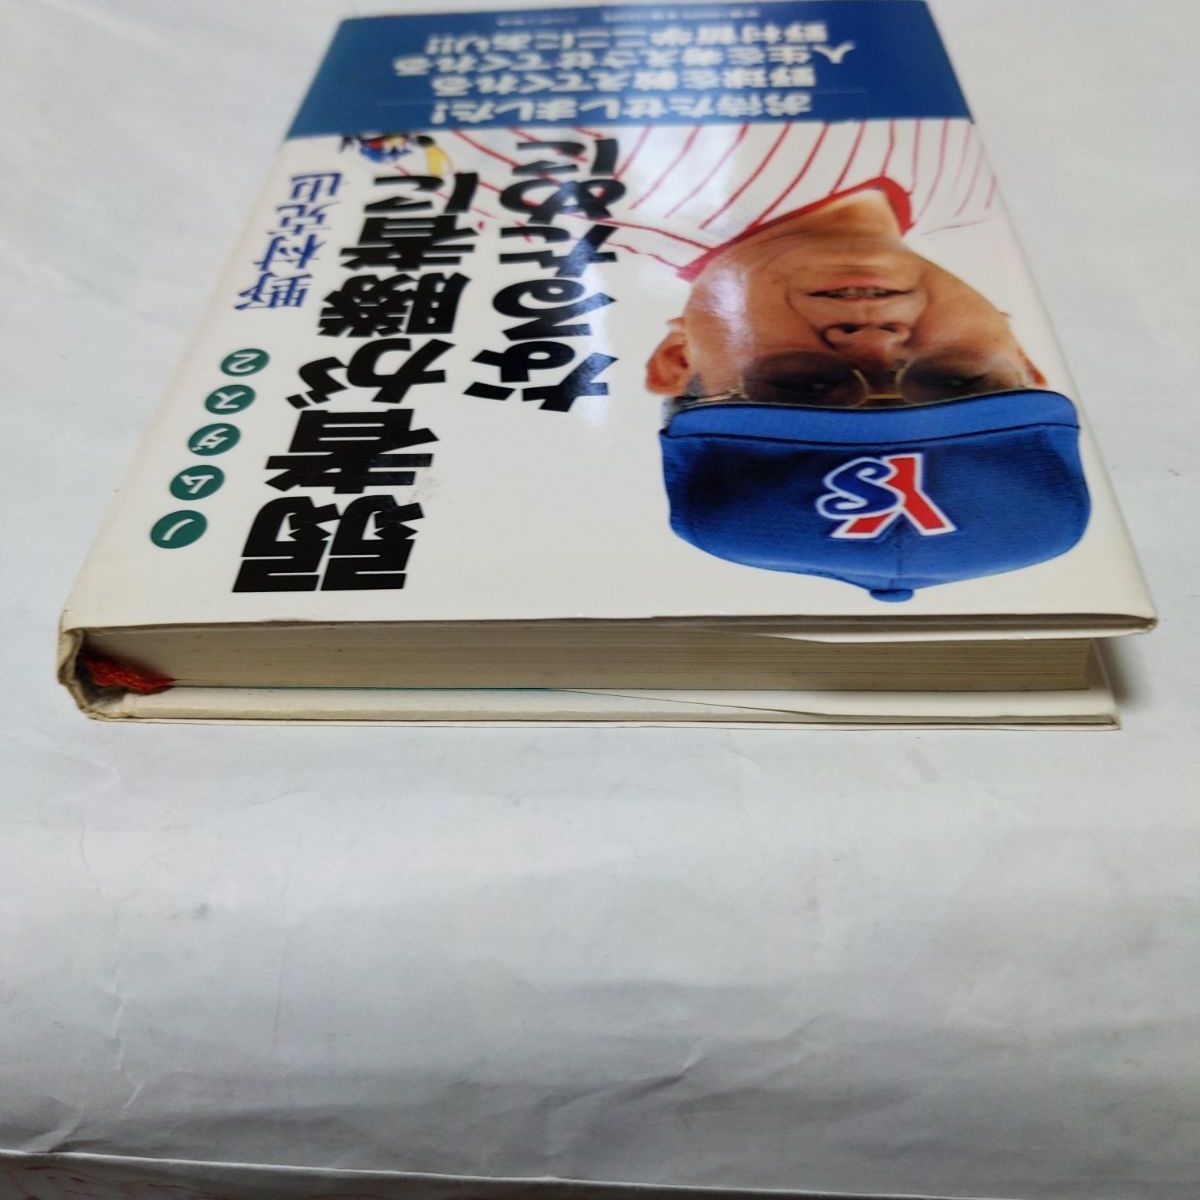 ❖レア書籍❖「弱者が勝者になるために」著:野村克也 1998年初版第1刷